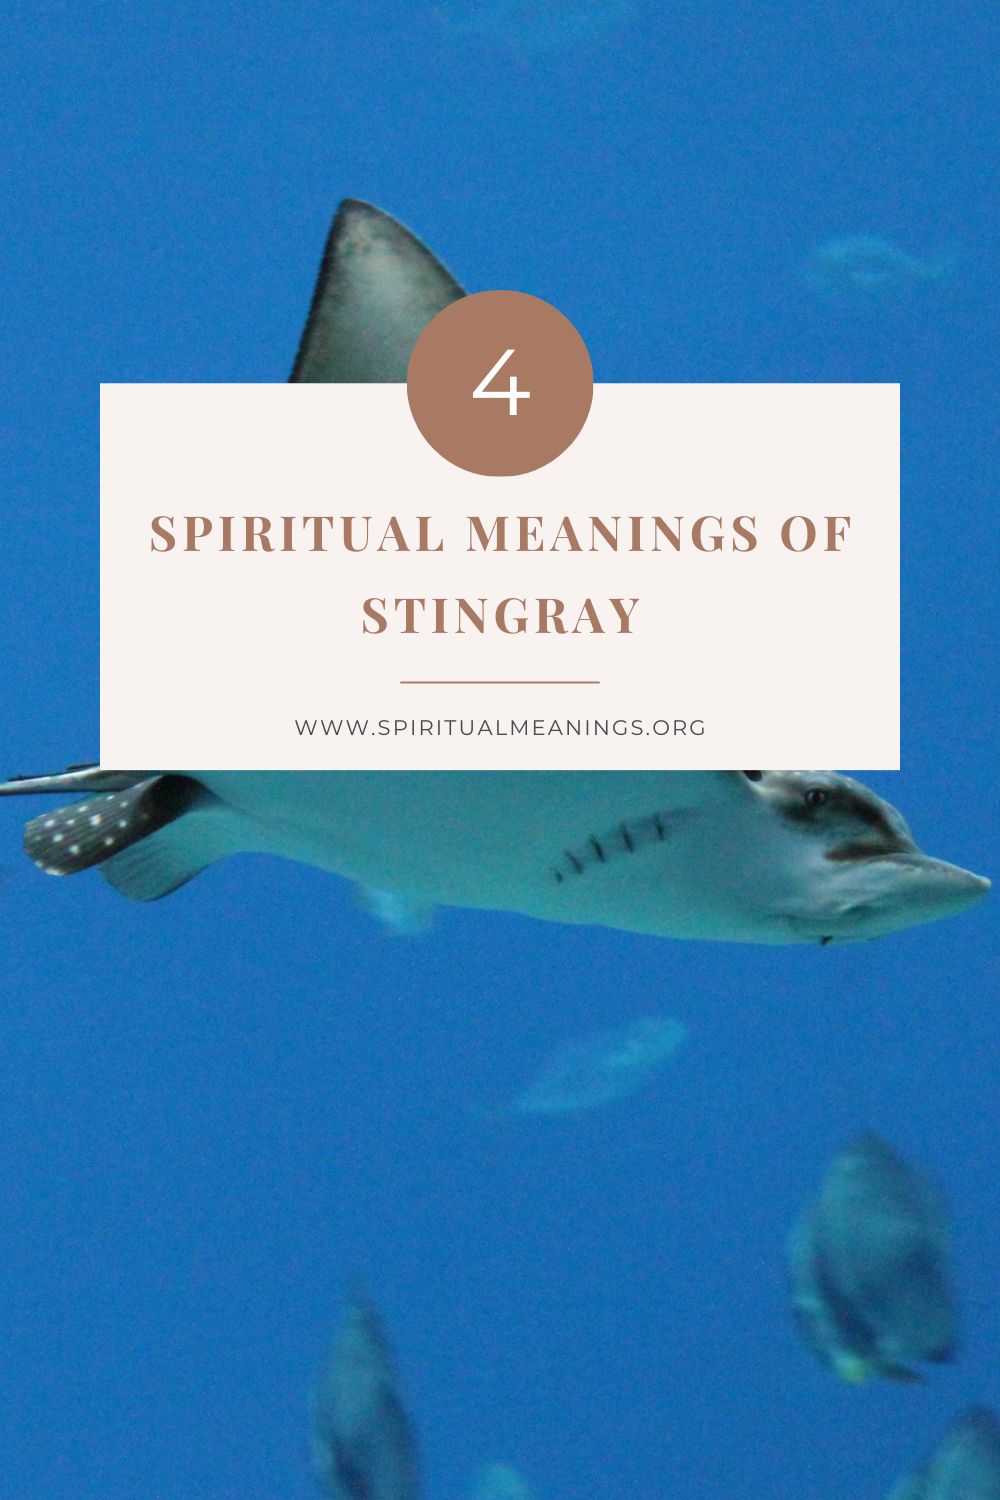 Stingray as a Power Animal